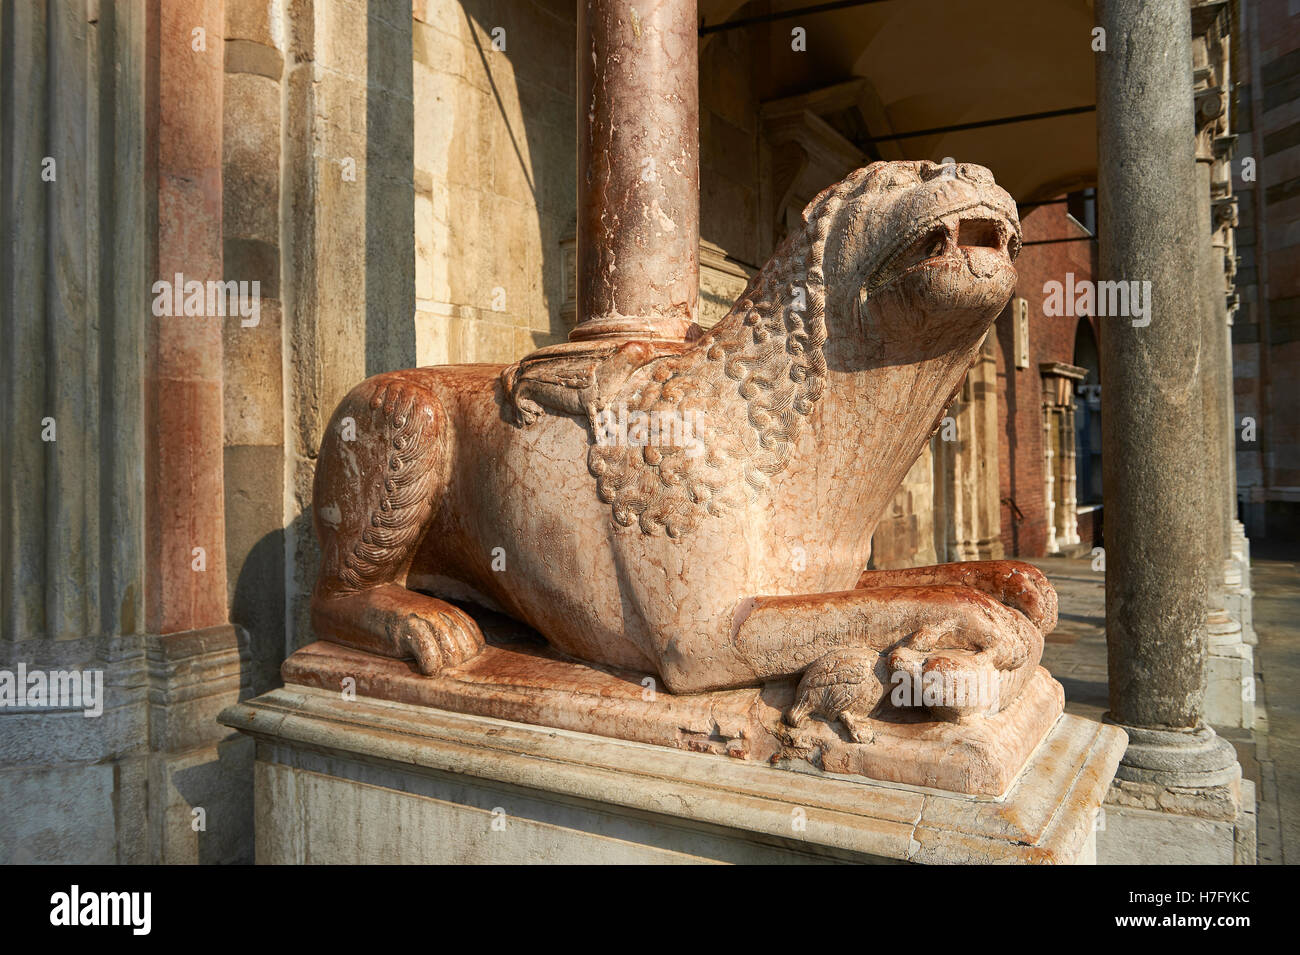 La sculpture romane Lion colonnes de soutien de la crémone Duomo baptistère, commencé 1107, Cremona, Lombardie, Italie du nord Banque D'Images